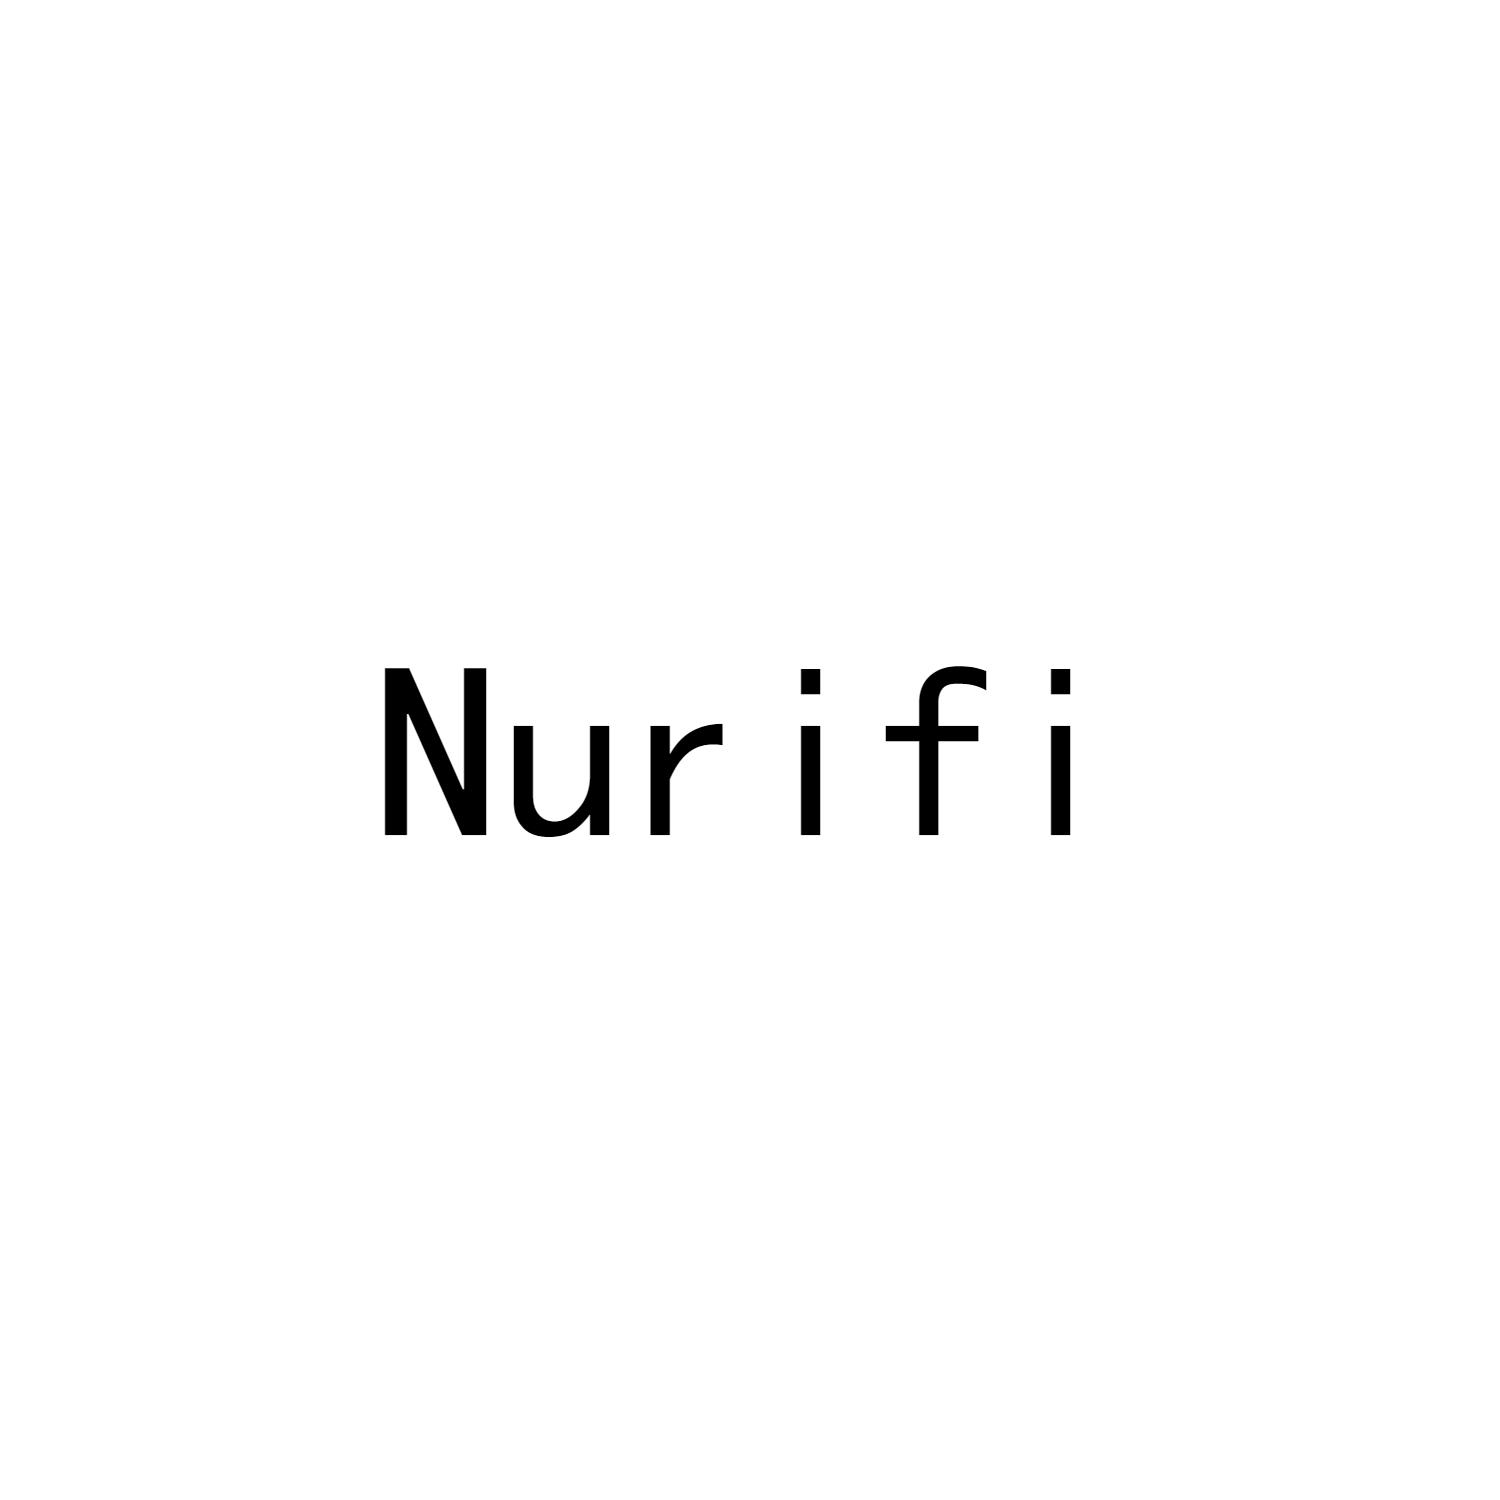 NURIFI